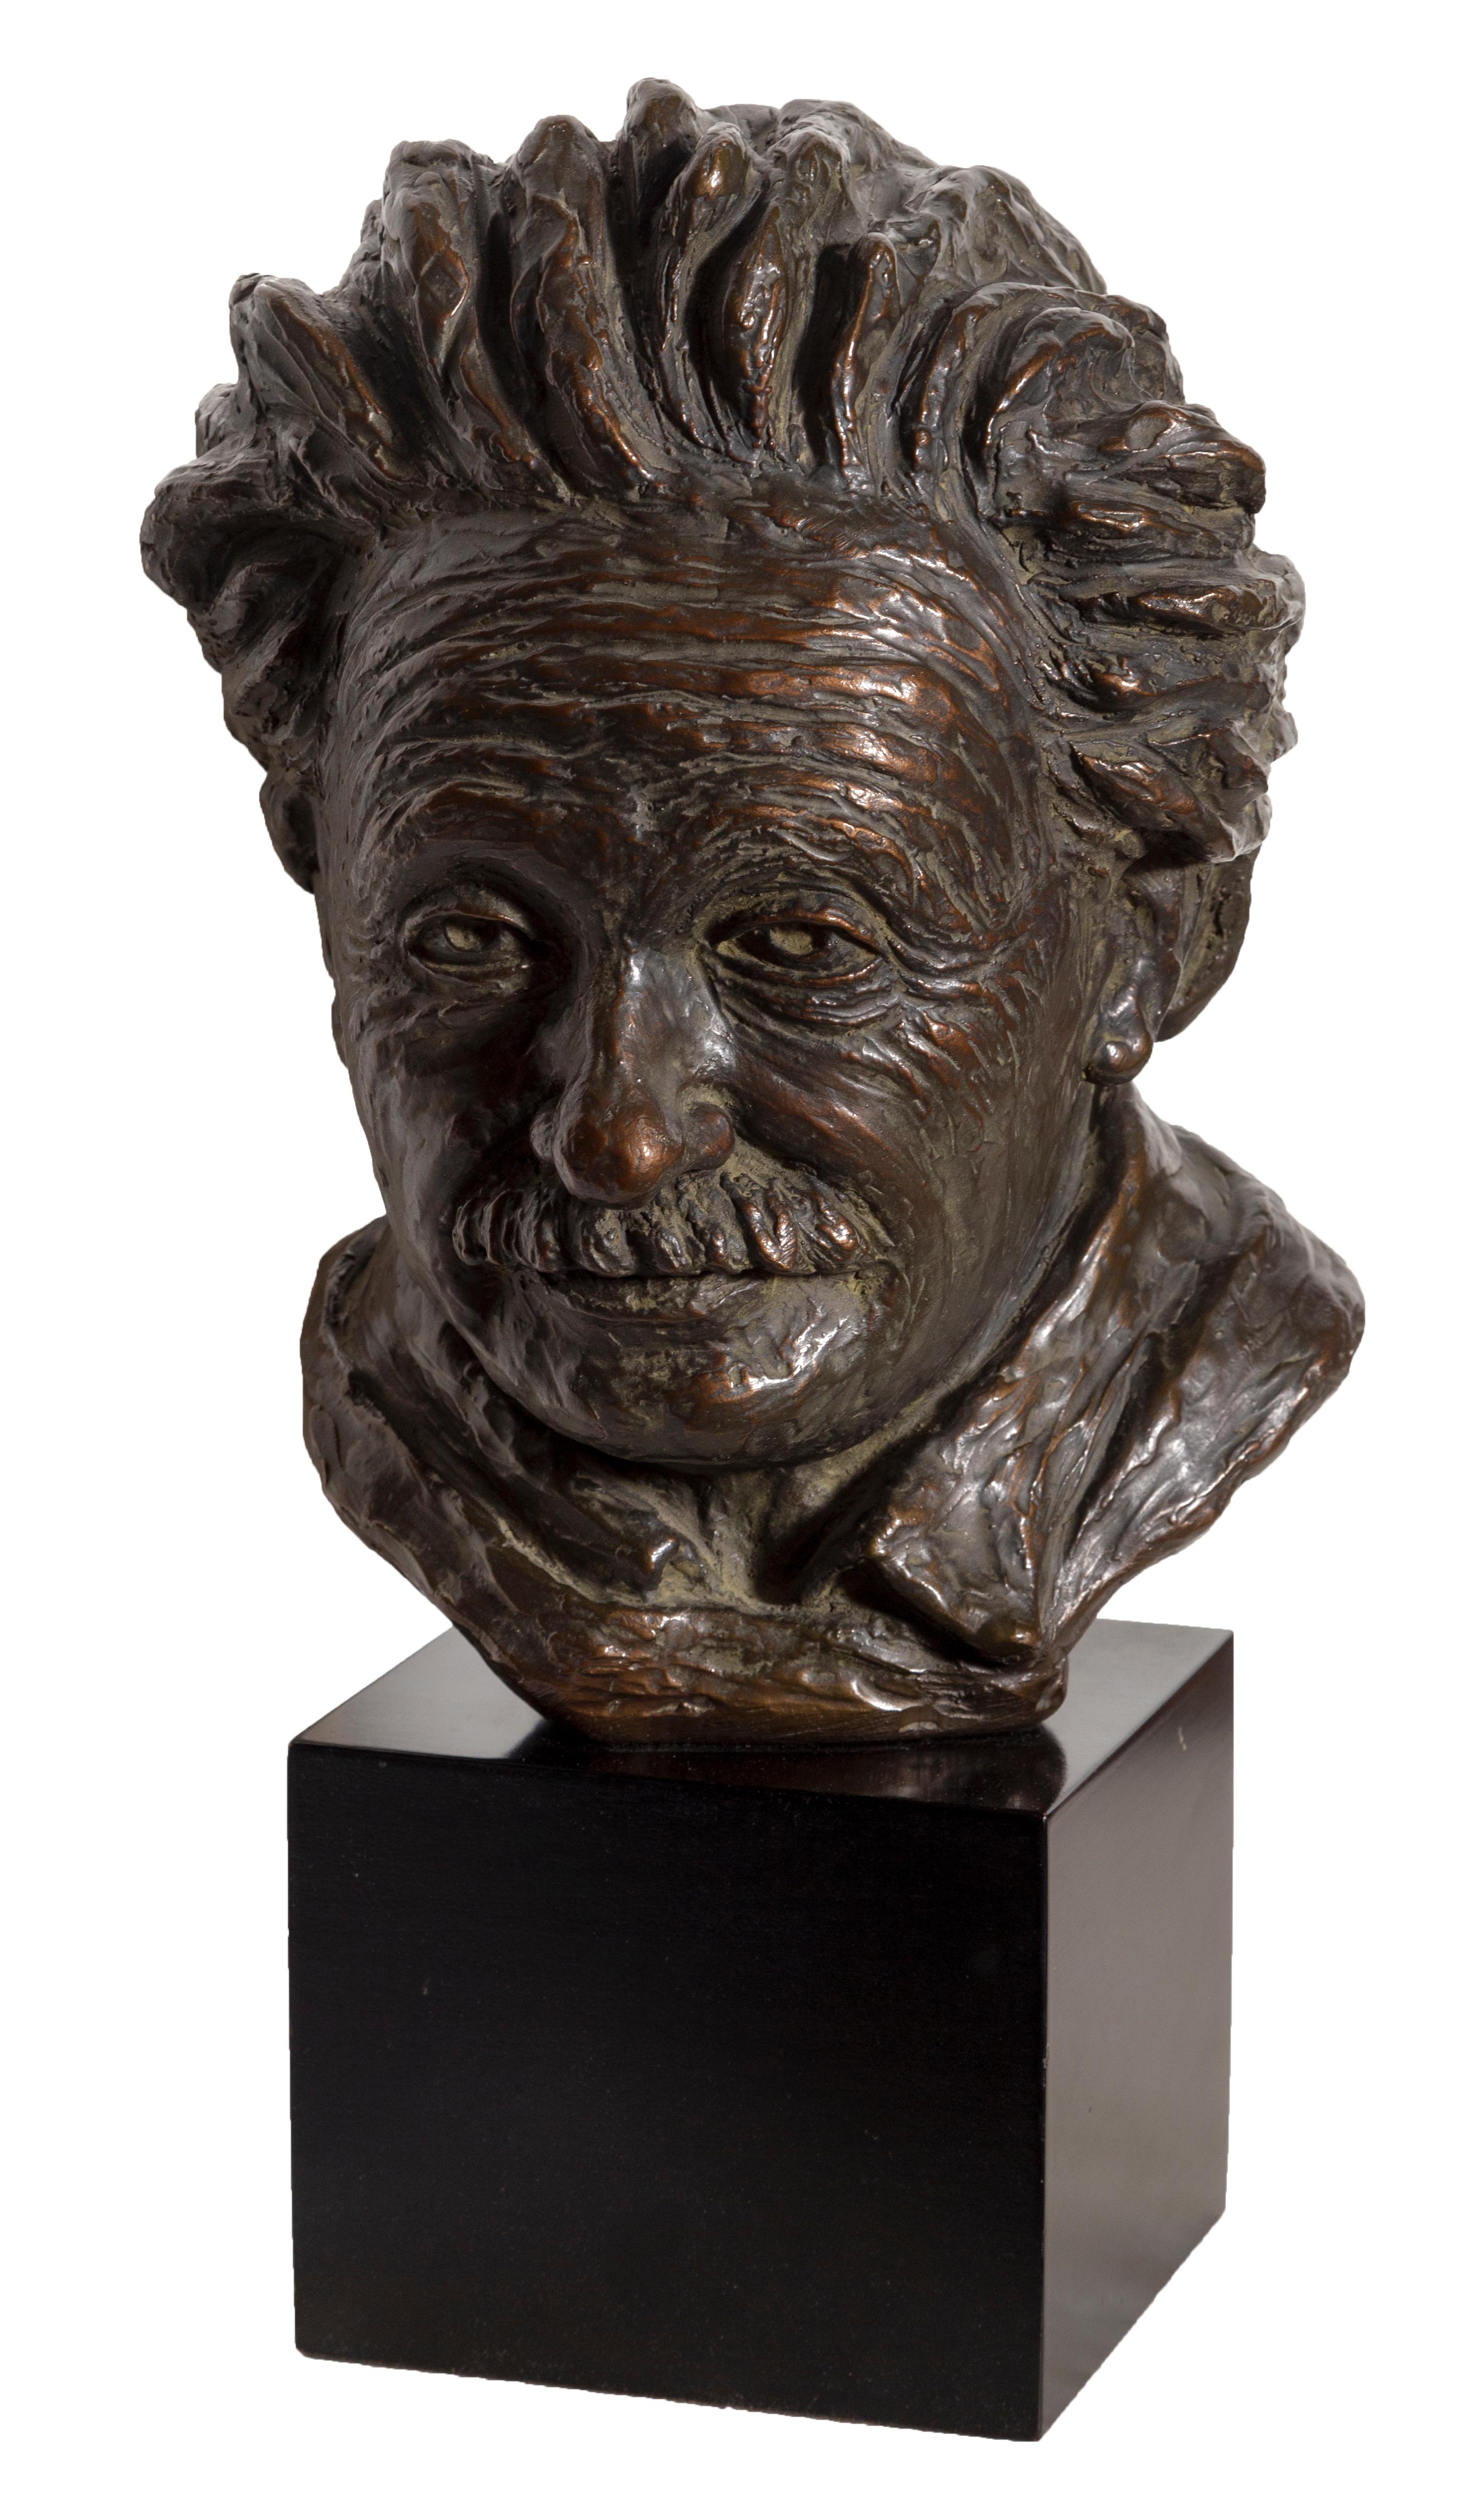 Unknown Figurative Sculpture - Bust of Albert Einstein, Plaster Sculpture 1964